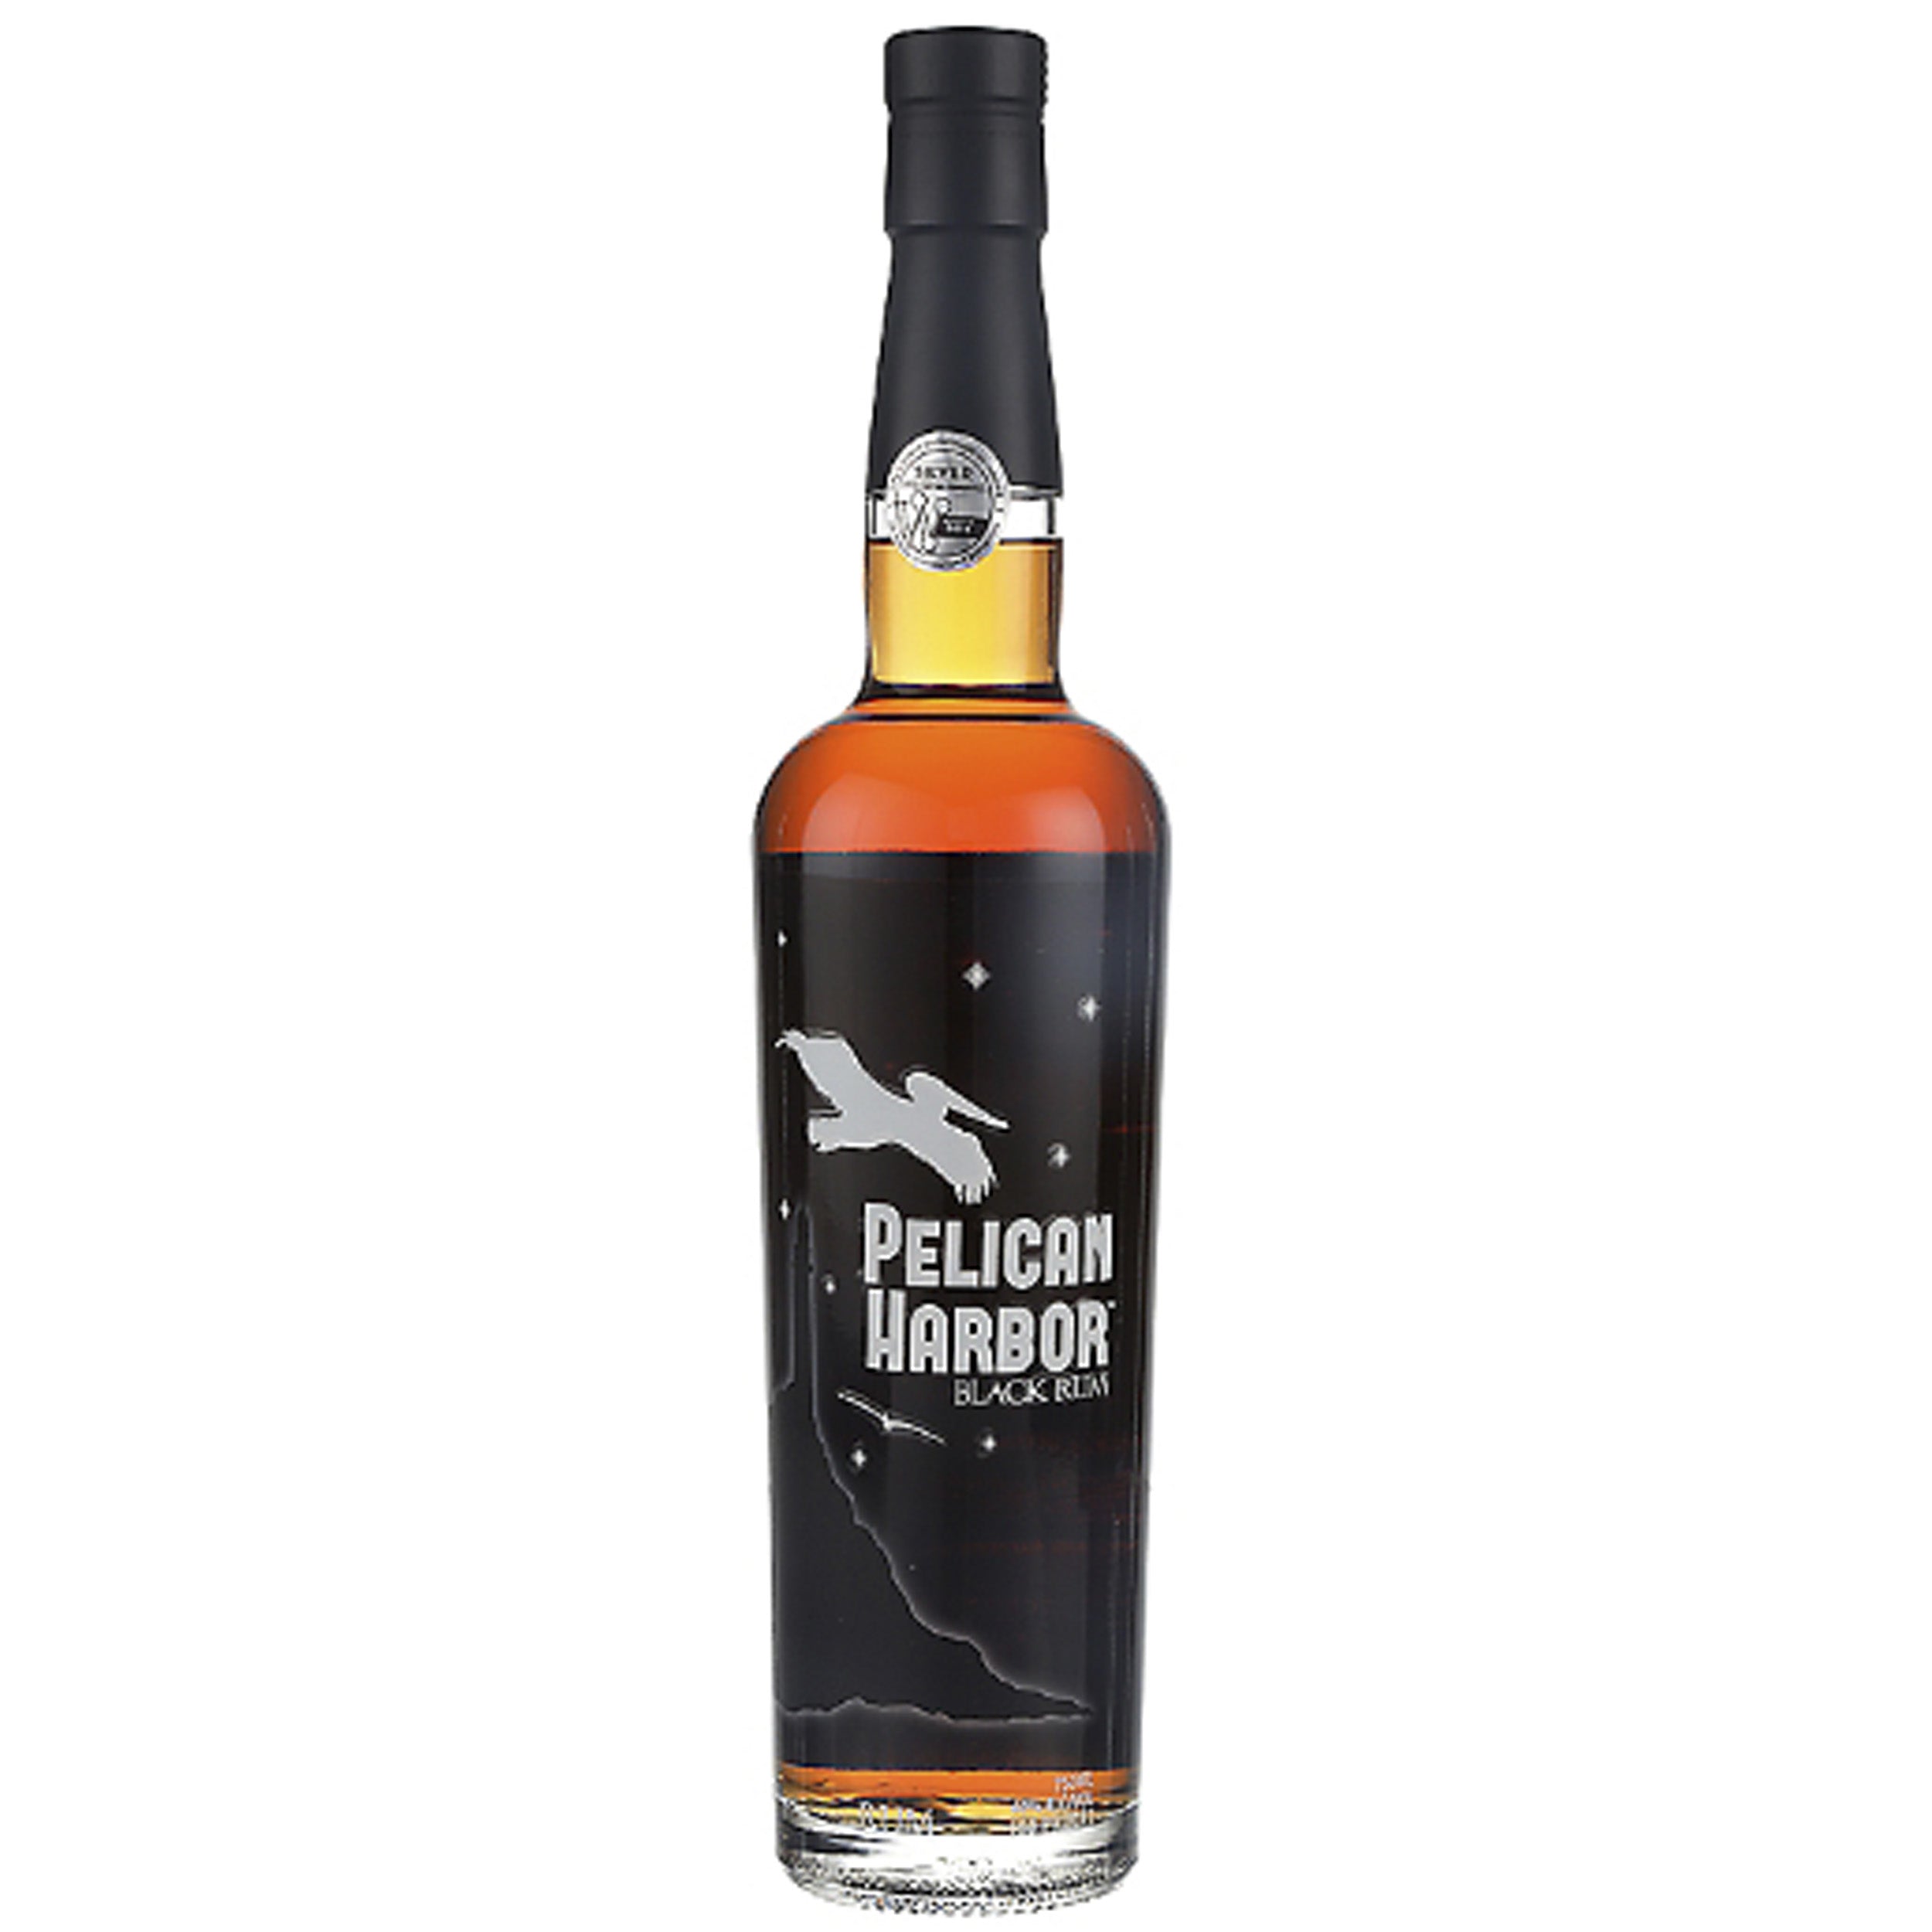 Pelican Harbor Black Rum